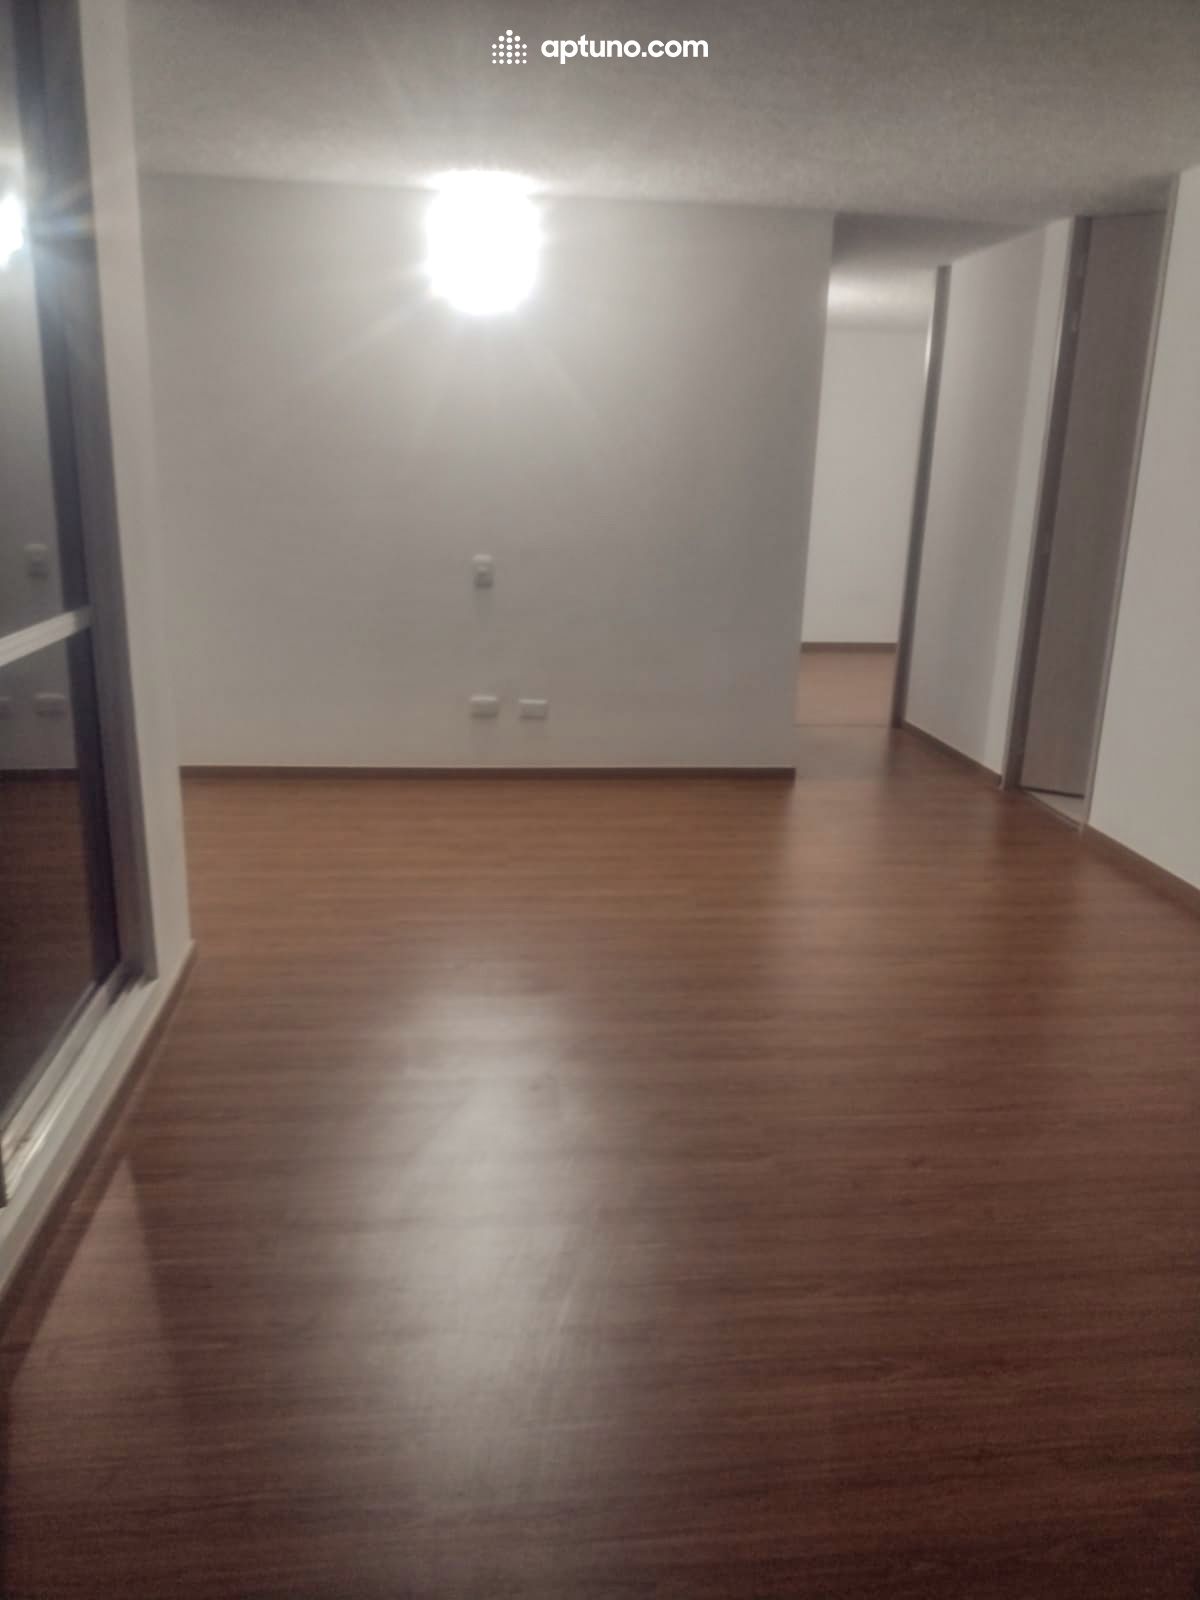 Apartamento en arriendo Tocancipá 55 m² - $ 768.000,00